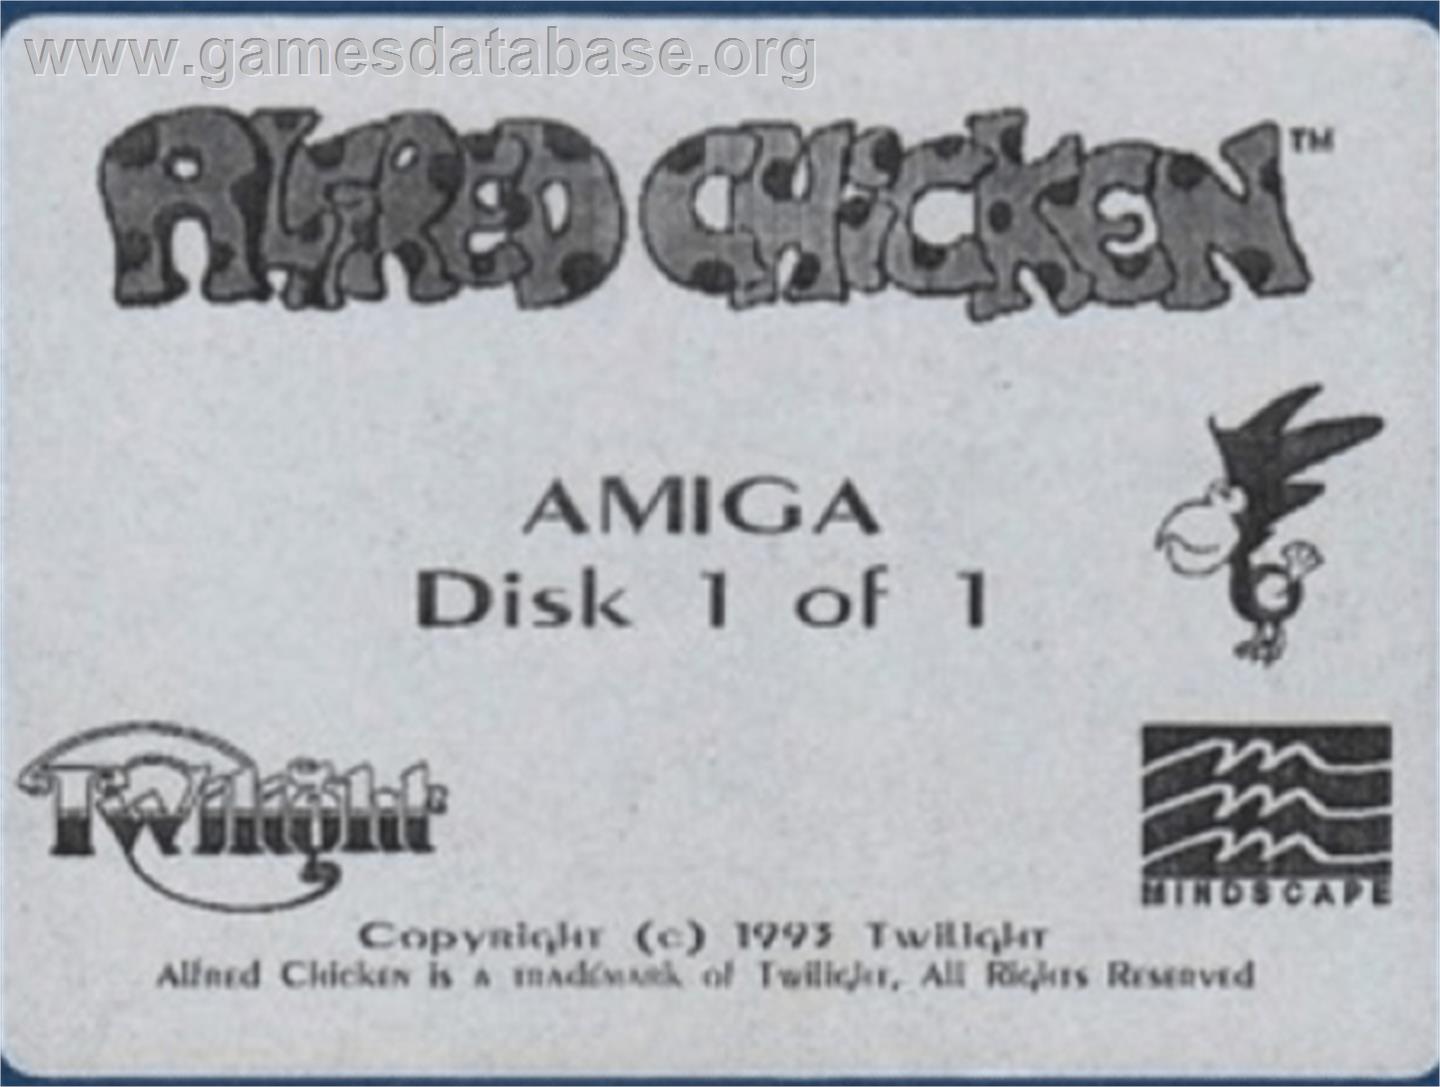 Alfred Chicken - Commodore Amiga - Artwork - Cartridge Top